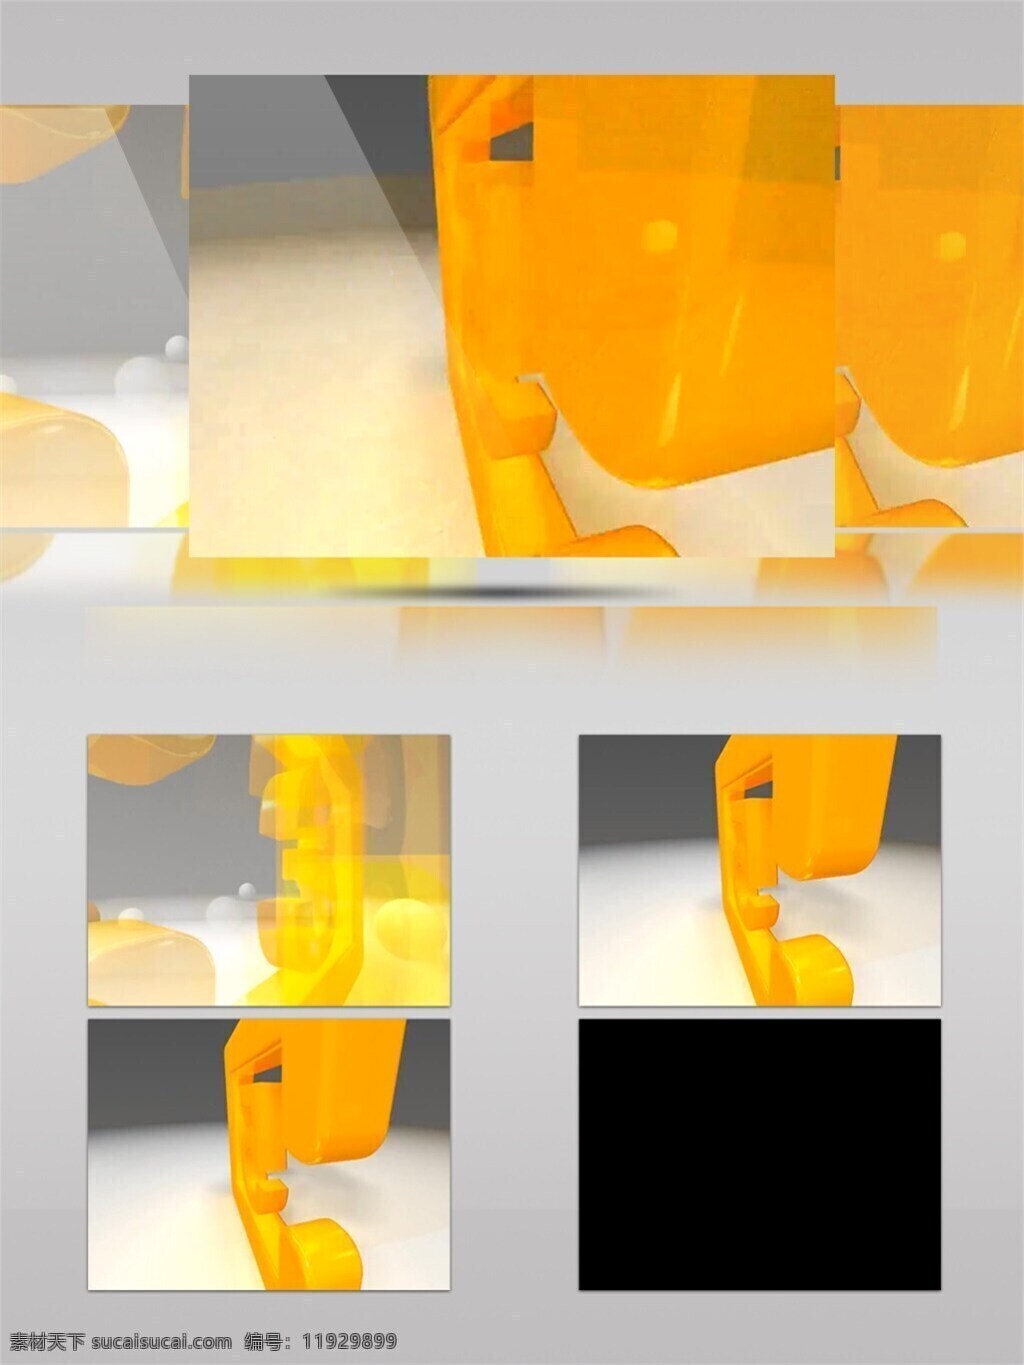 橙 光 果冻 光束 视频 橙色 光斑散射 激光 视觉享受 手机壁纸 数字